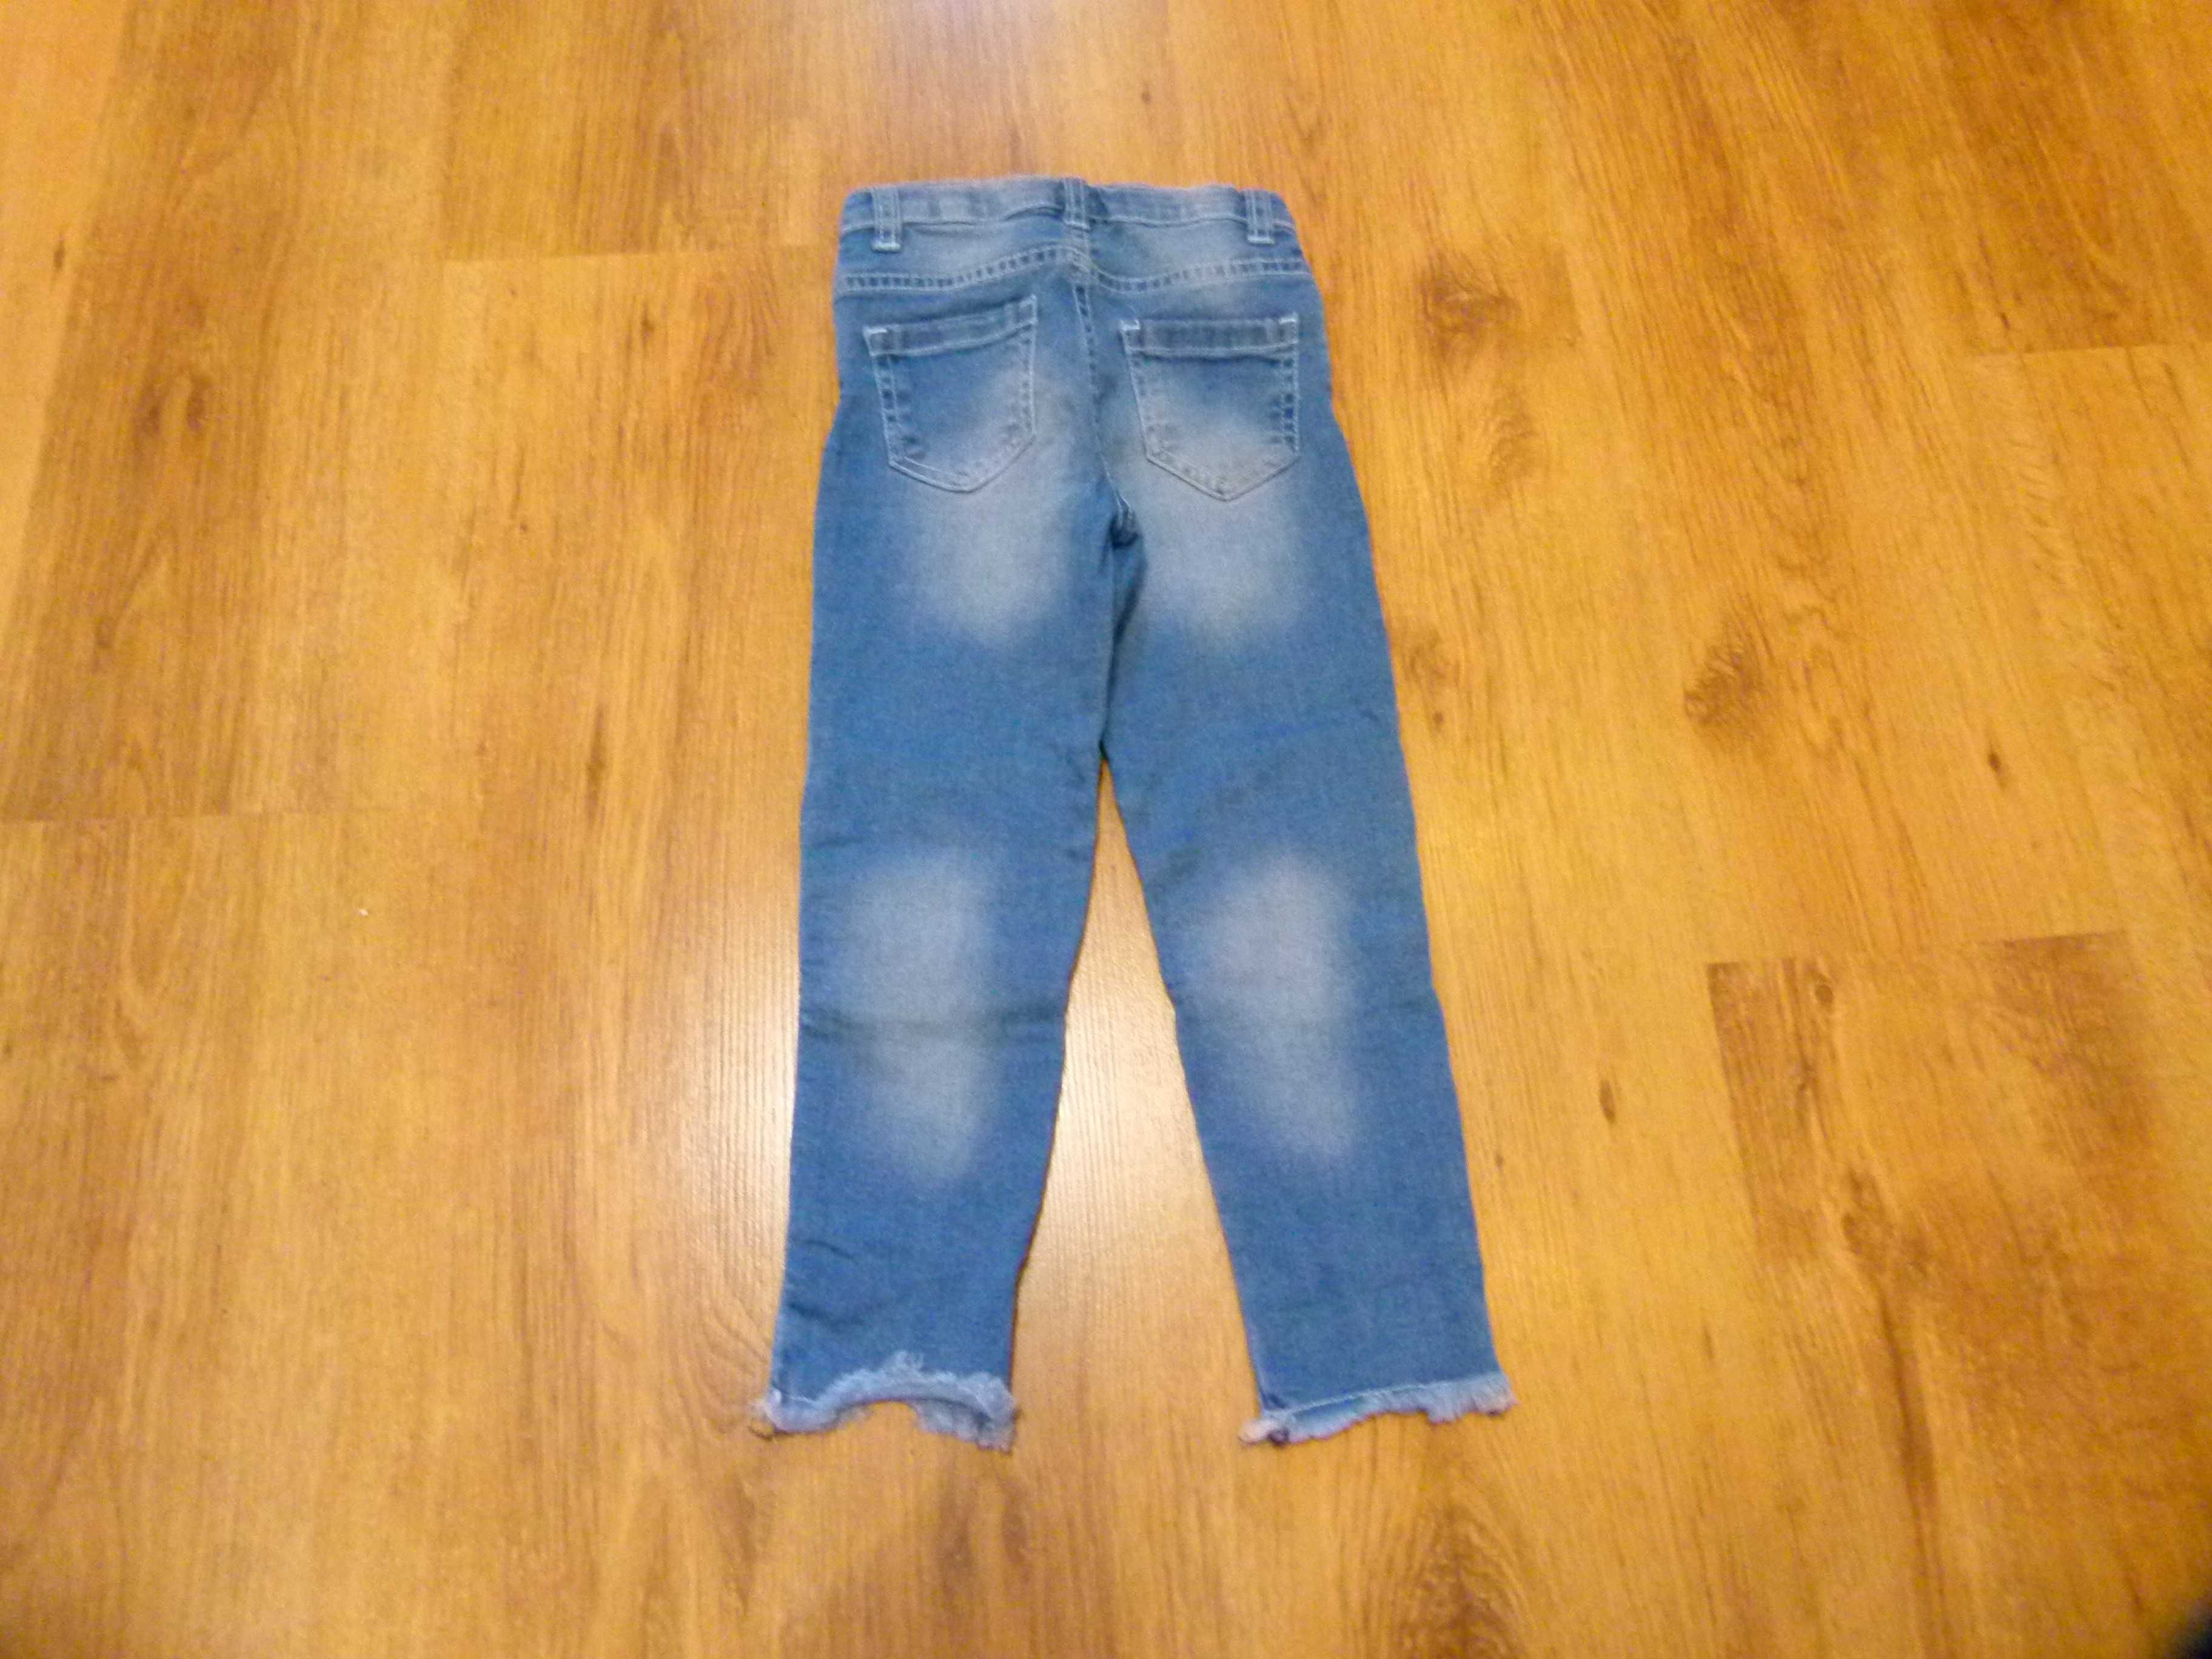 rozm 104 Little Kids spodnie jeans kolana cekiny postrzępione